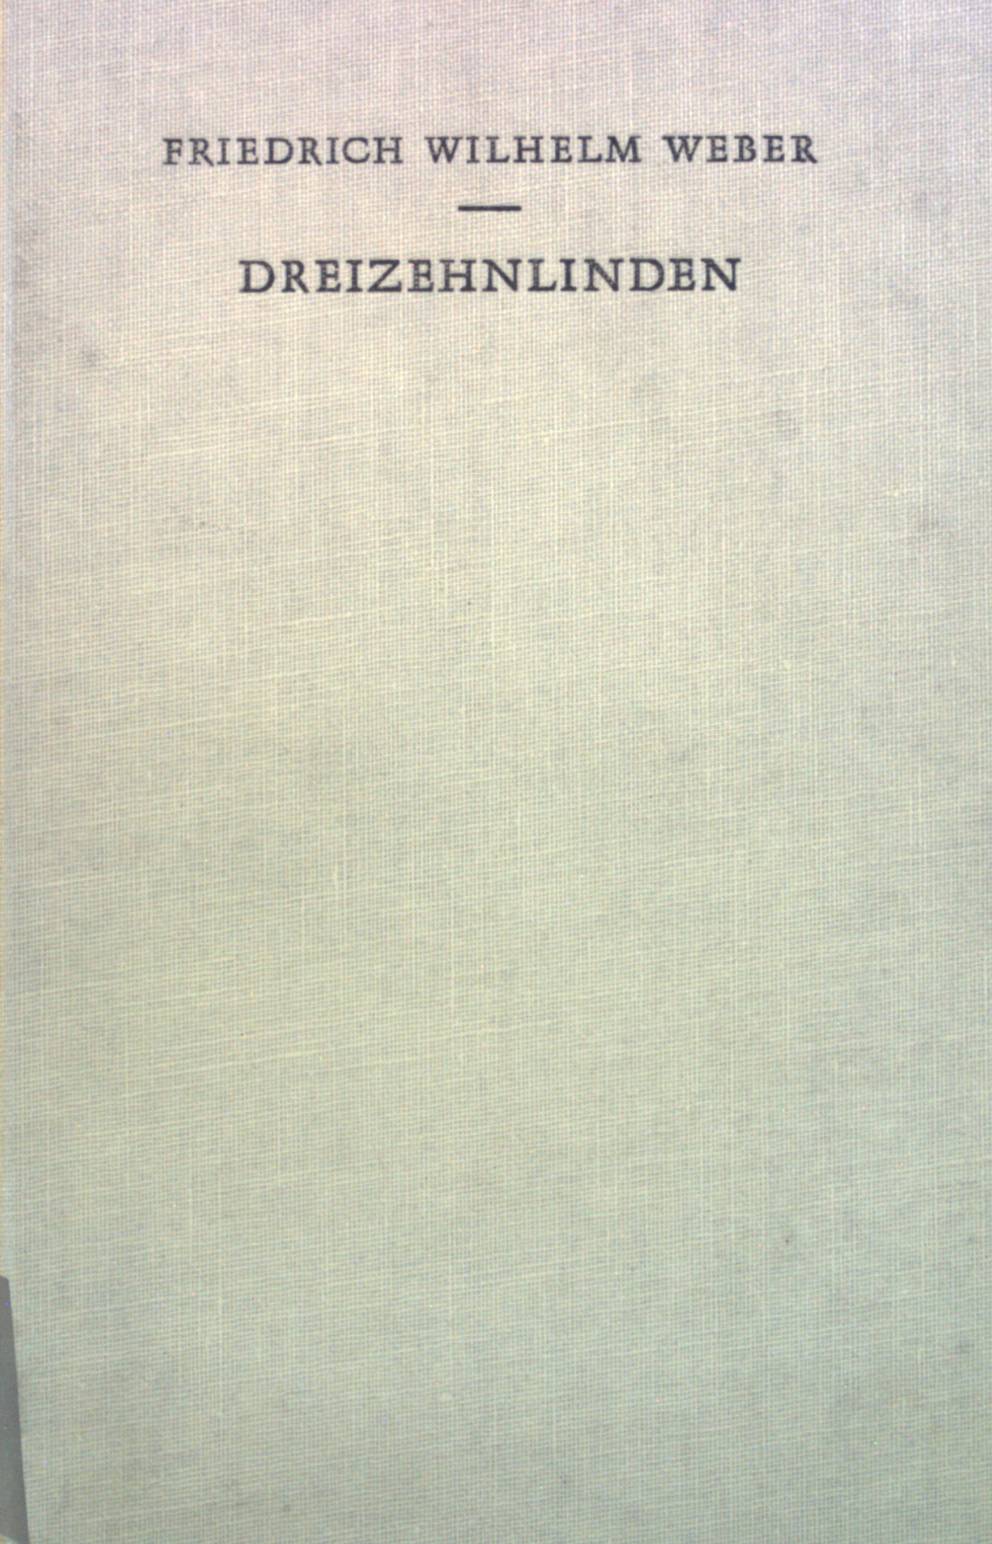 Dreizehnlinden: Vollständige Ausgabe mit Erläuterungen des Dichters. - Weber, Friedrich Wilhelm